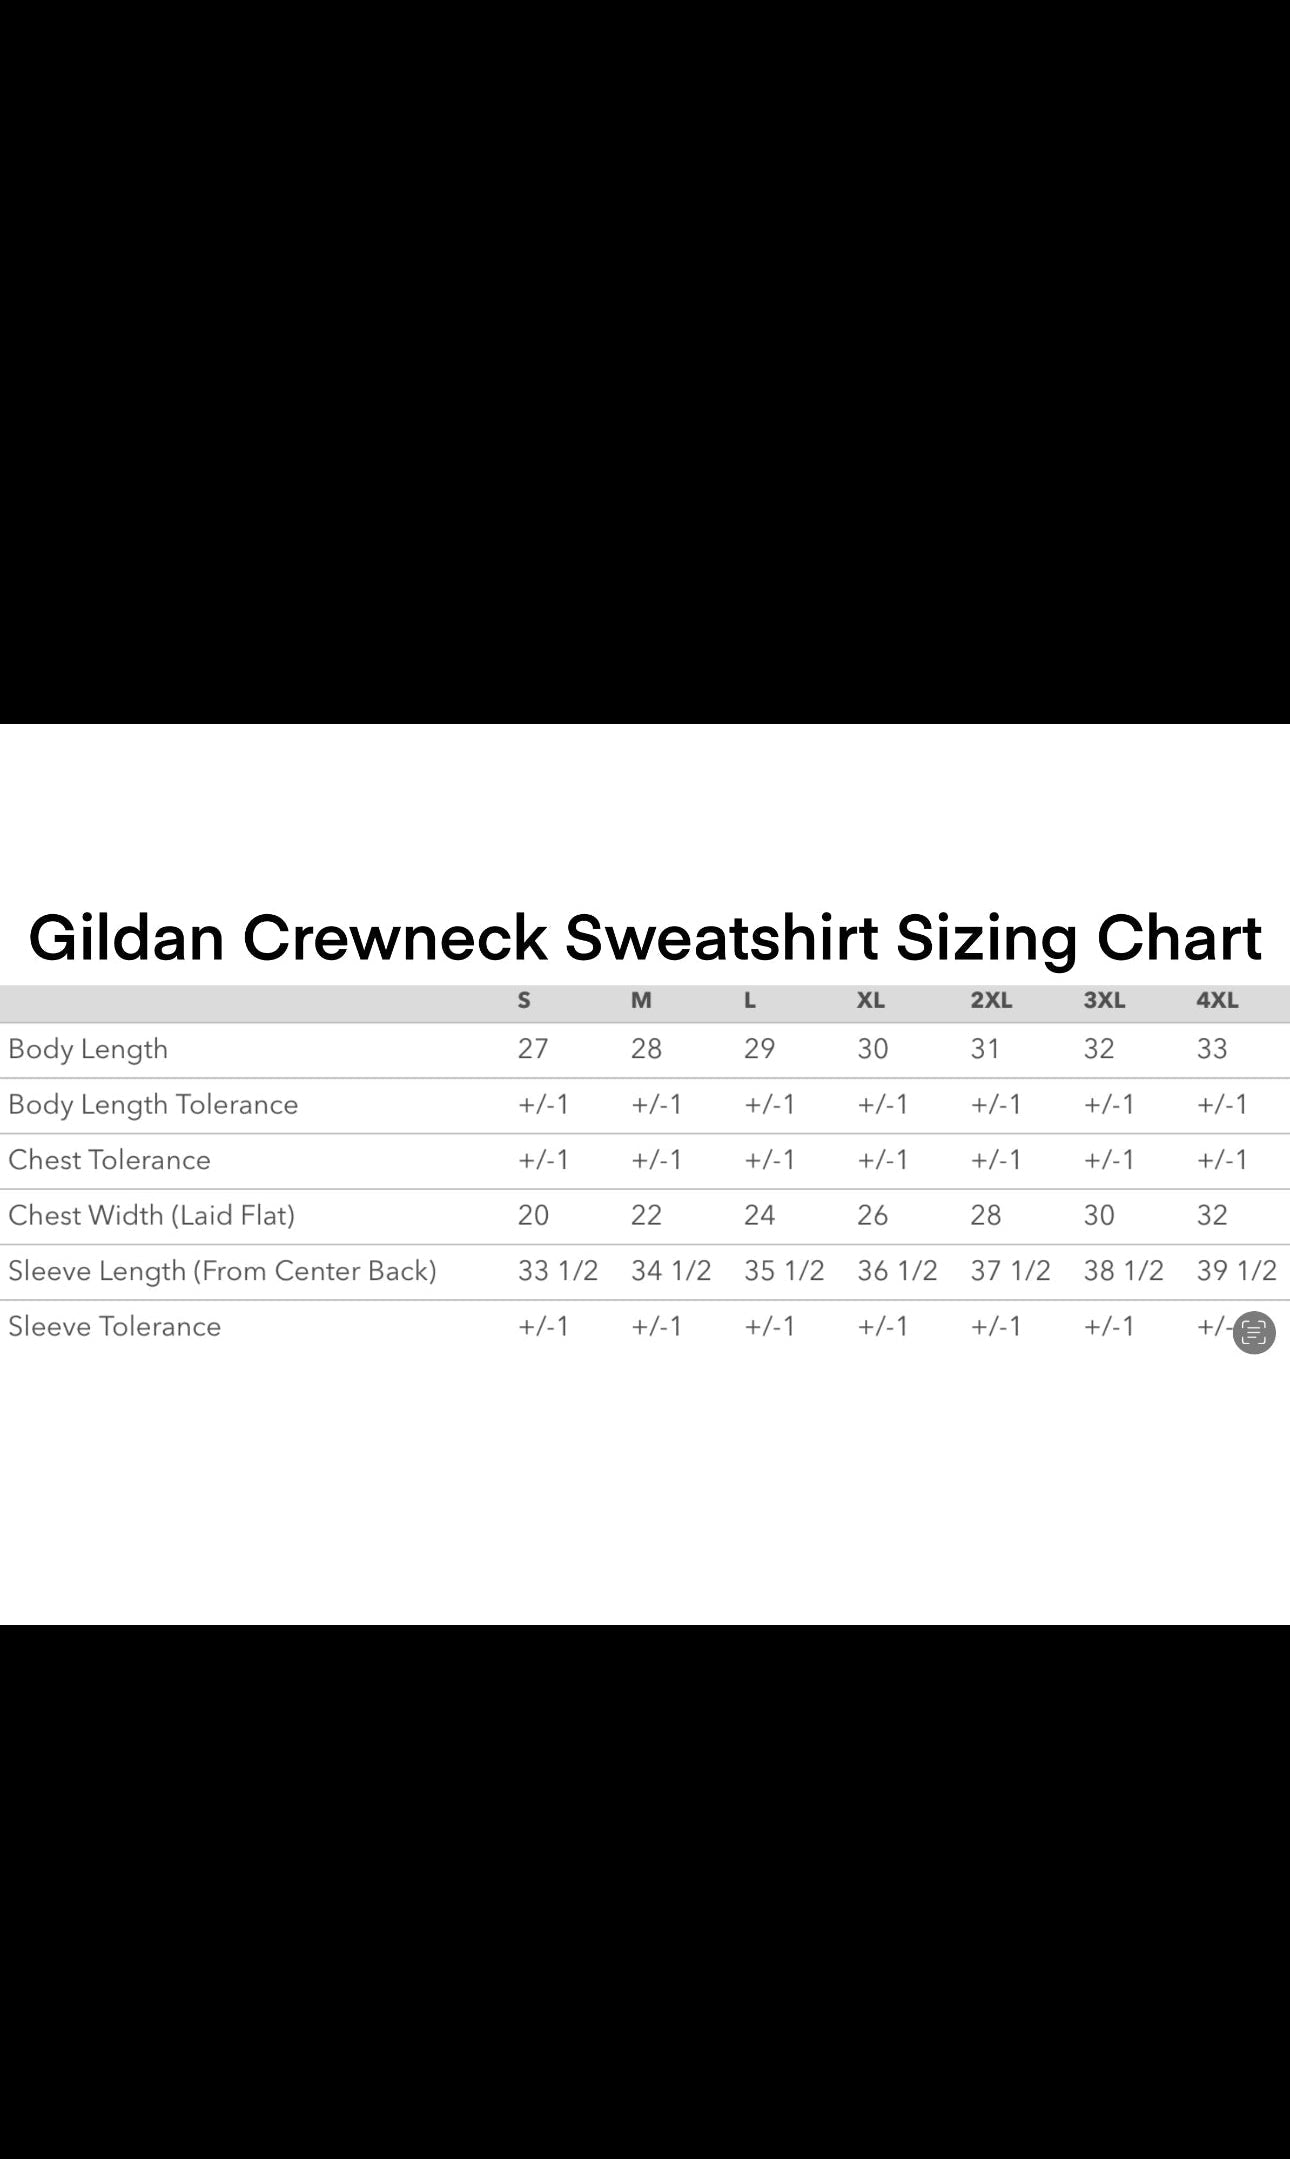 Lovestay Grey Crewneck Sweatshirt